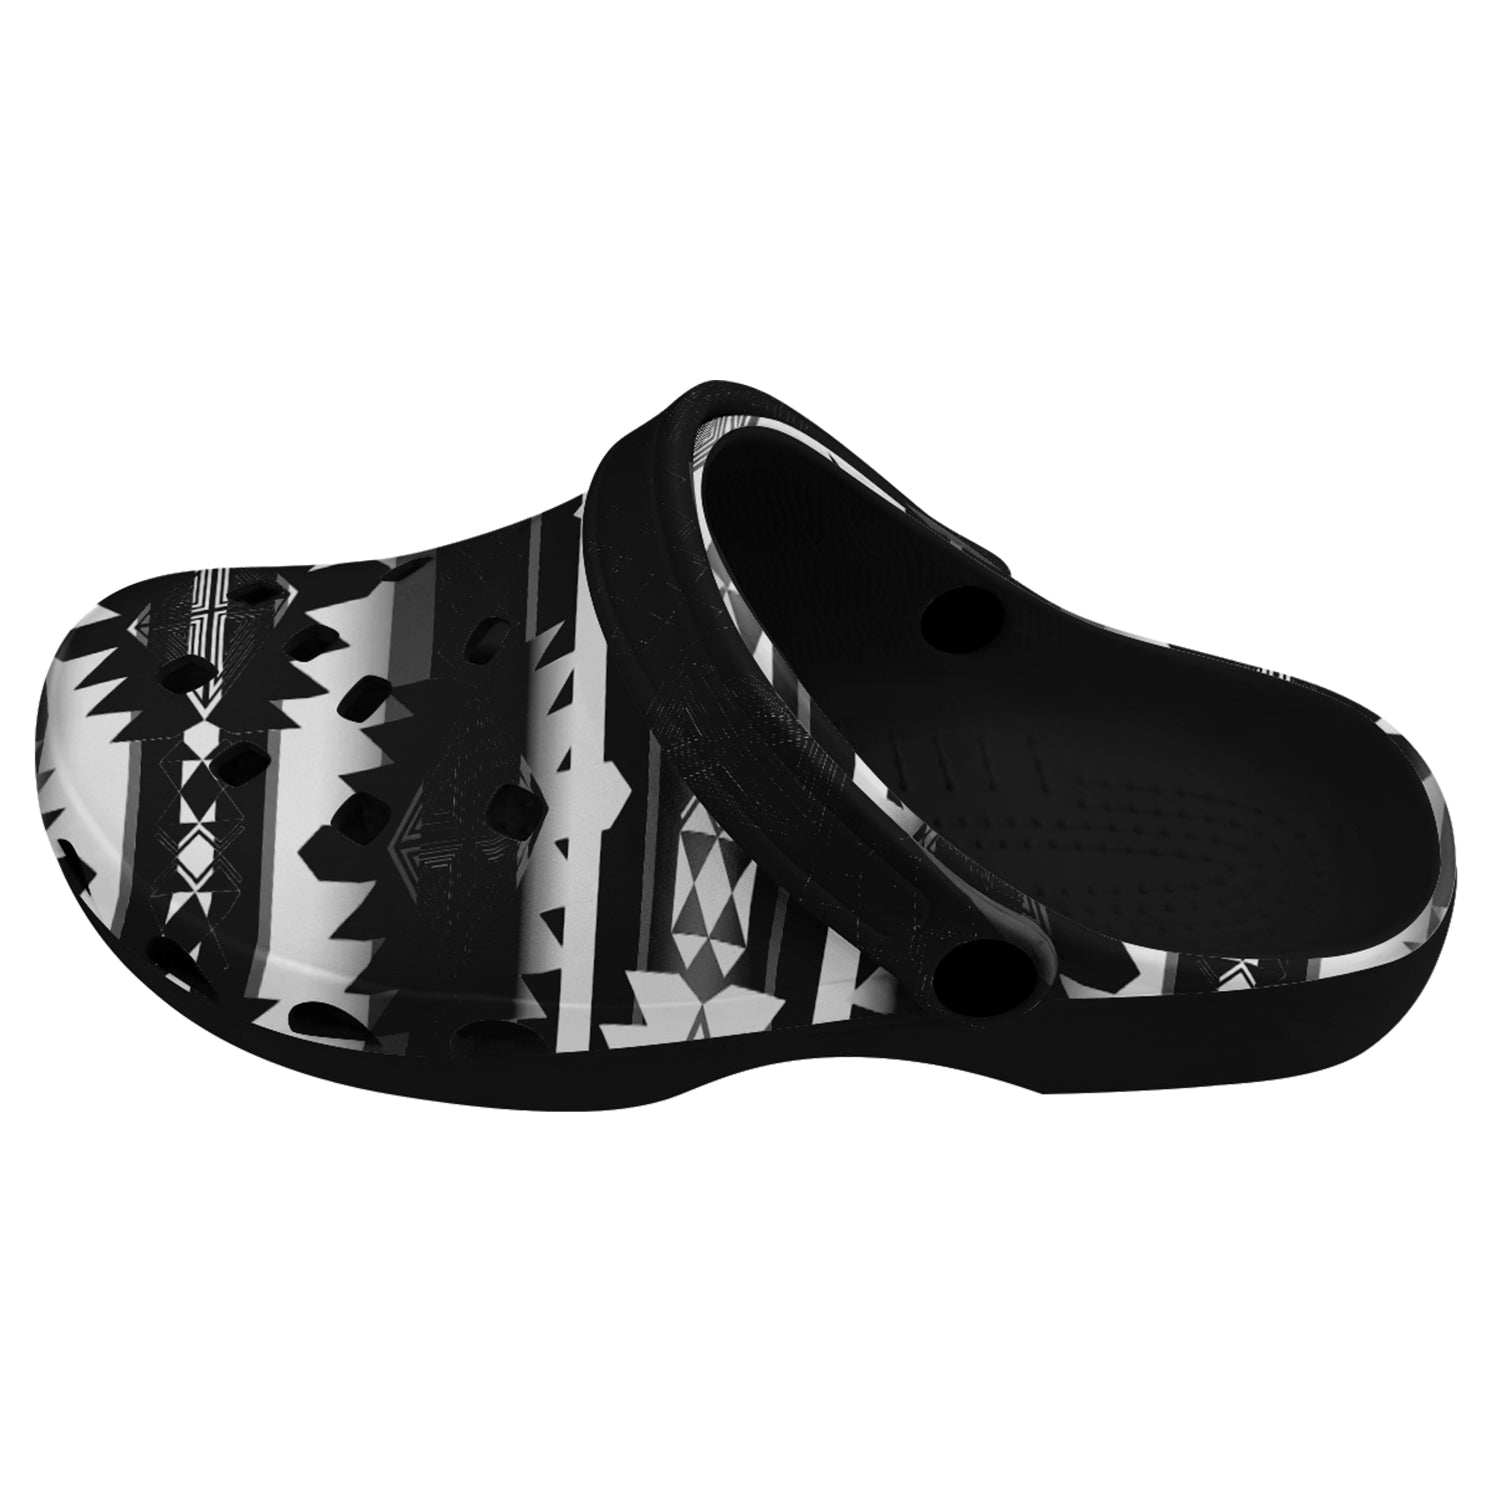 Okotoks Black and White Muddies Unisex Clog Shoes